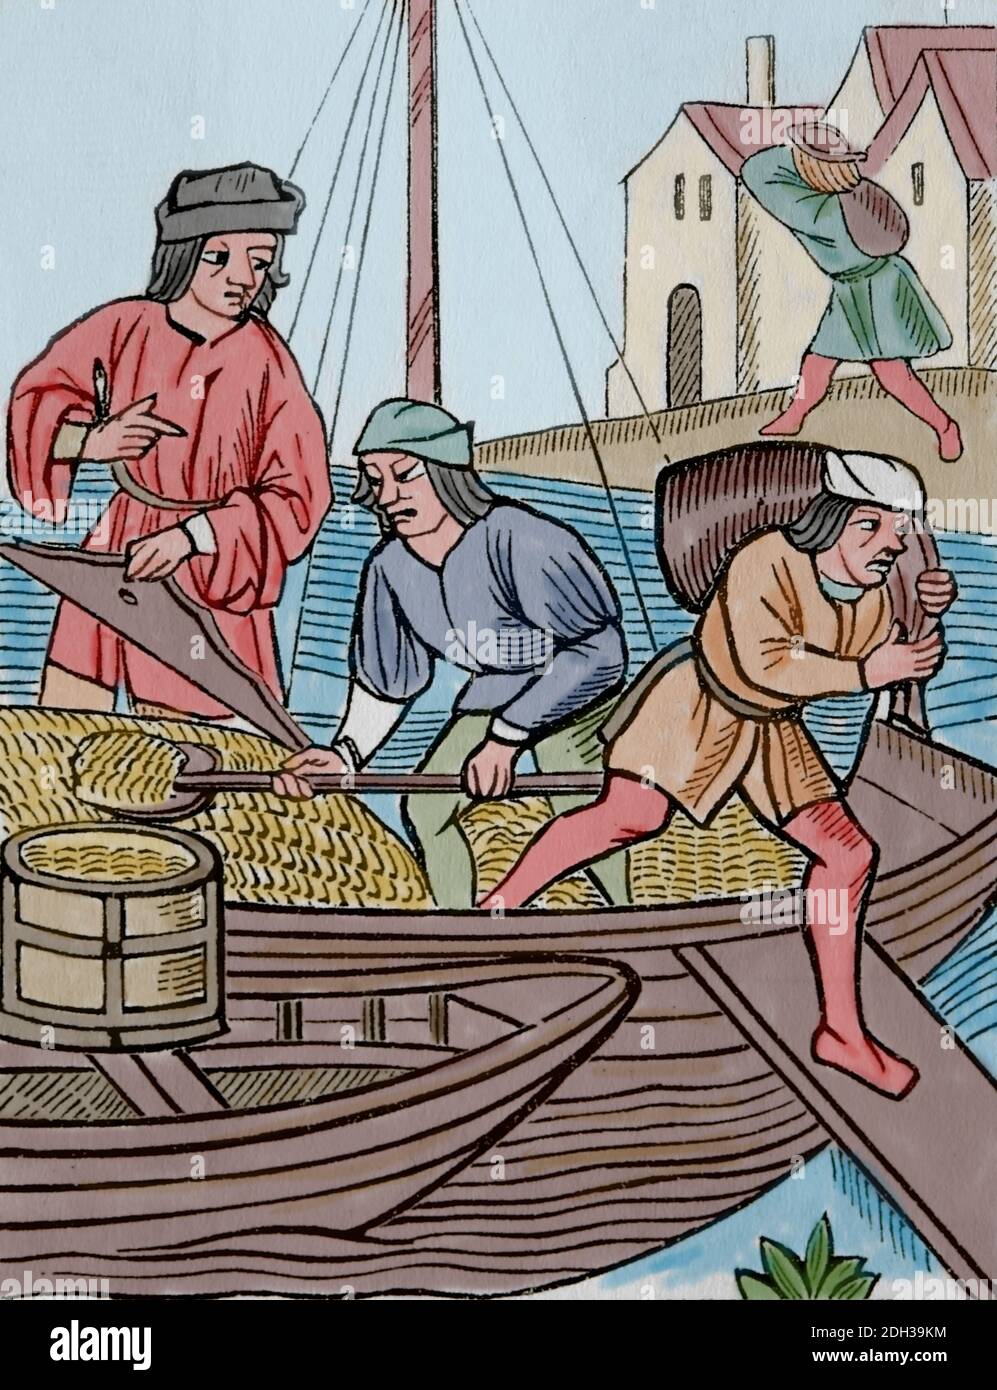 Mittelalter. Europa. Messen der Getreideprodukte, 1500. Gravur. Spätere Färbung. Stockfoto